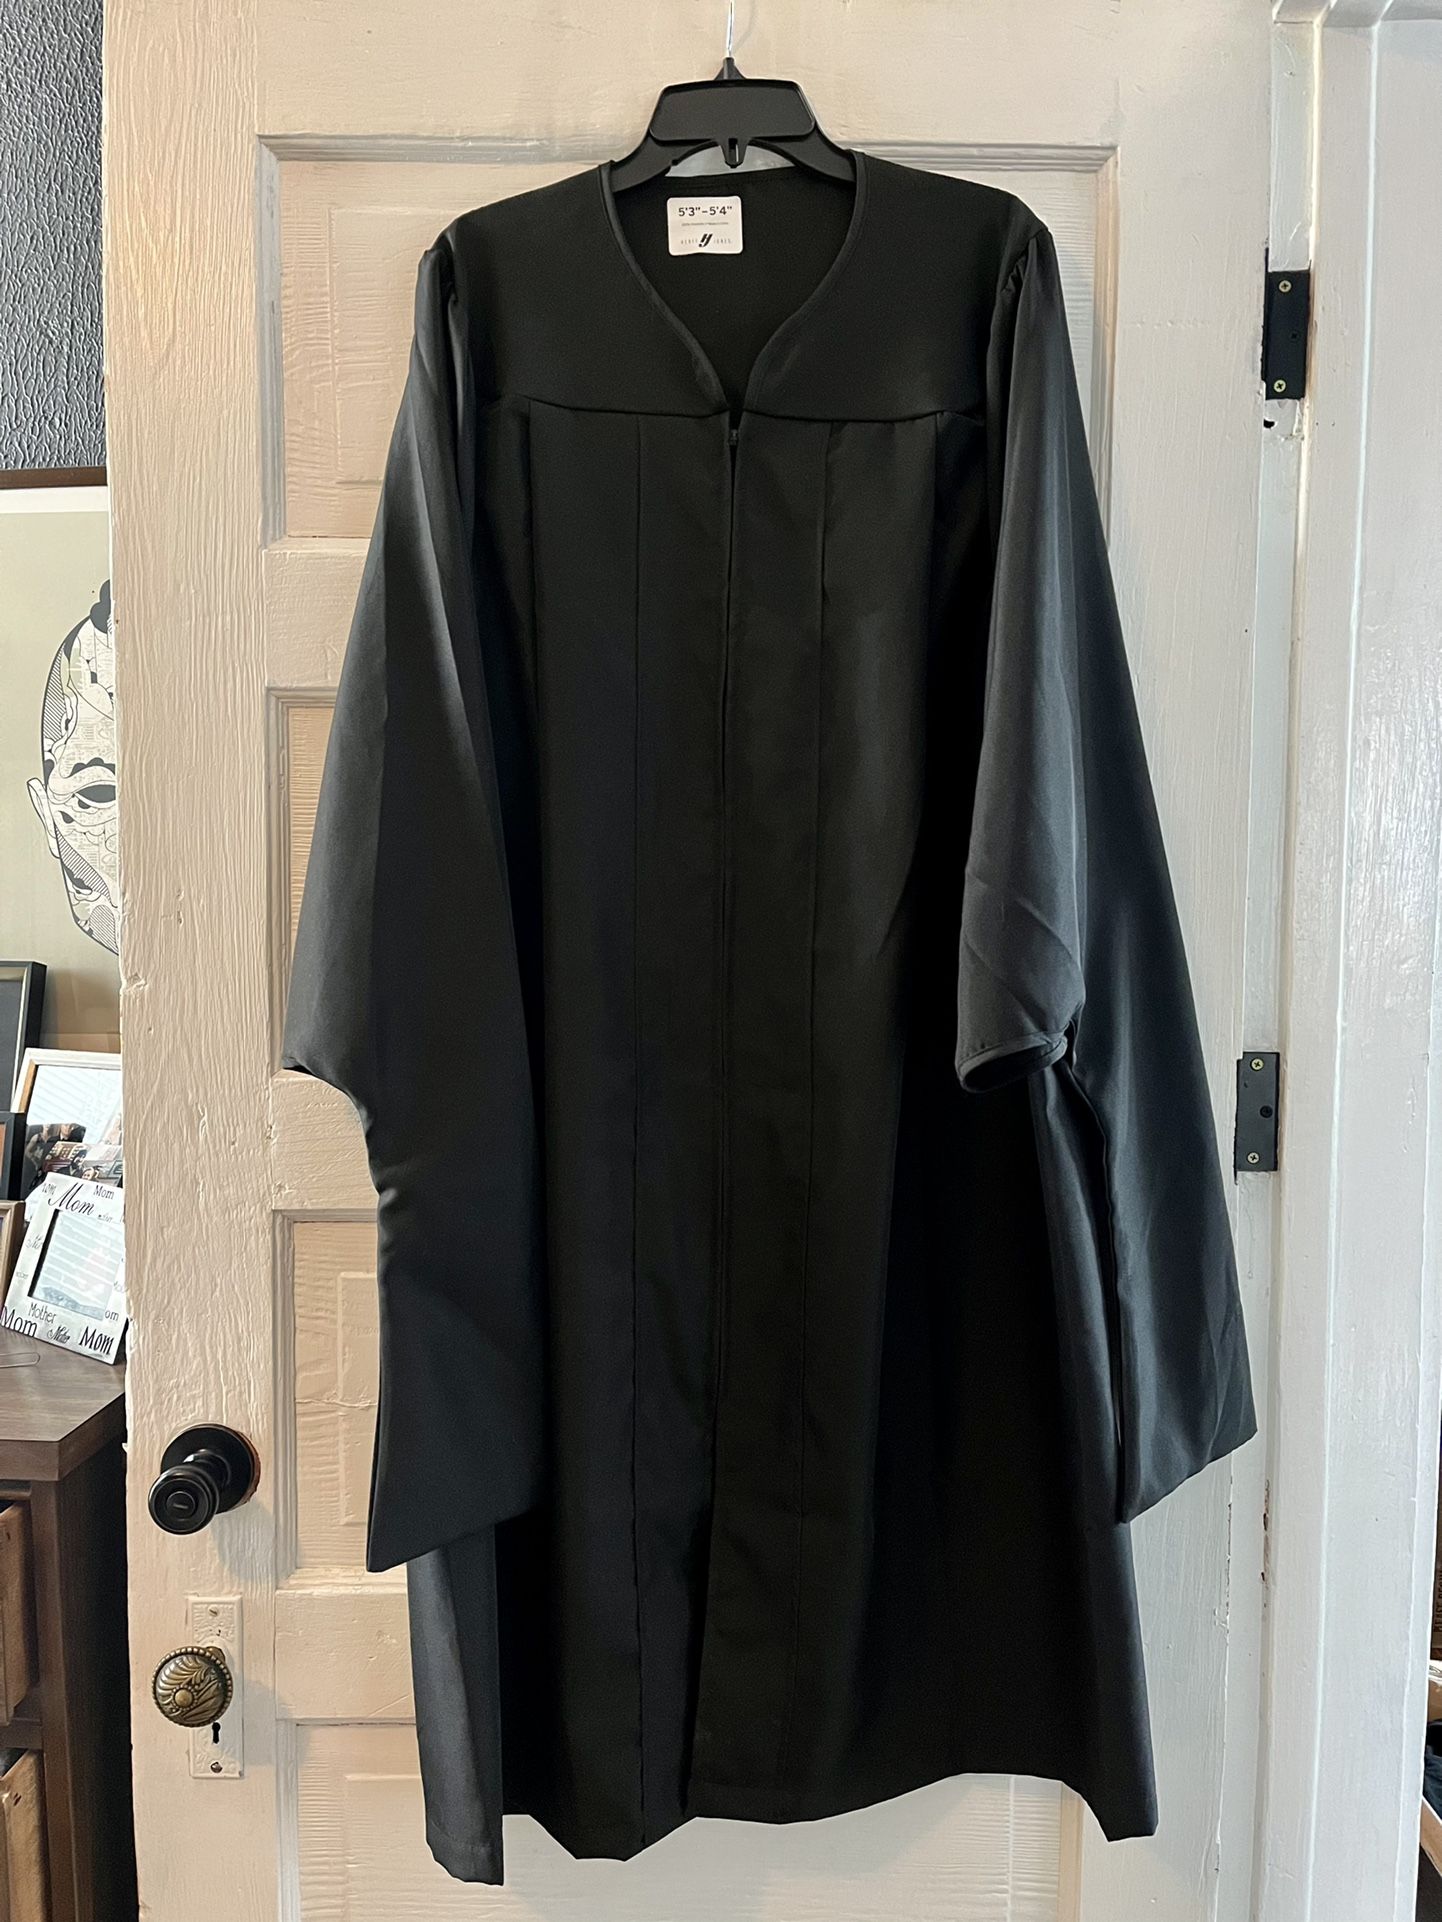 Cap & Gown - Graduation